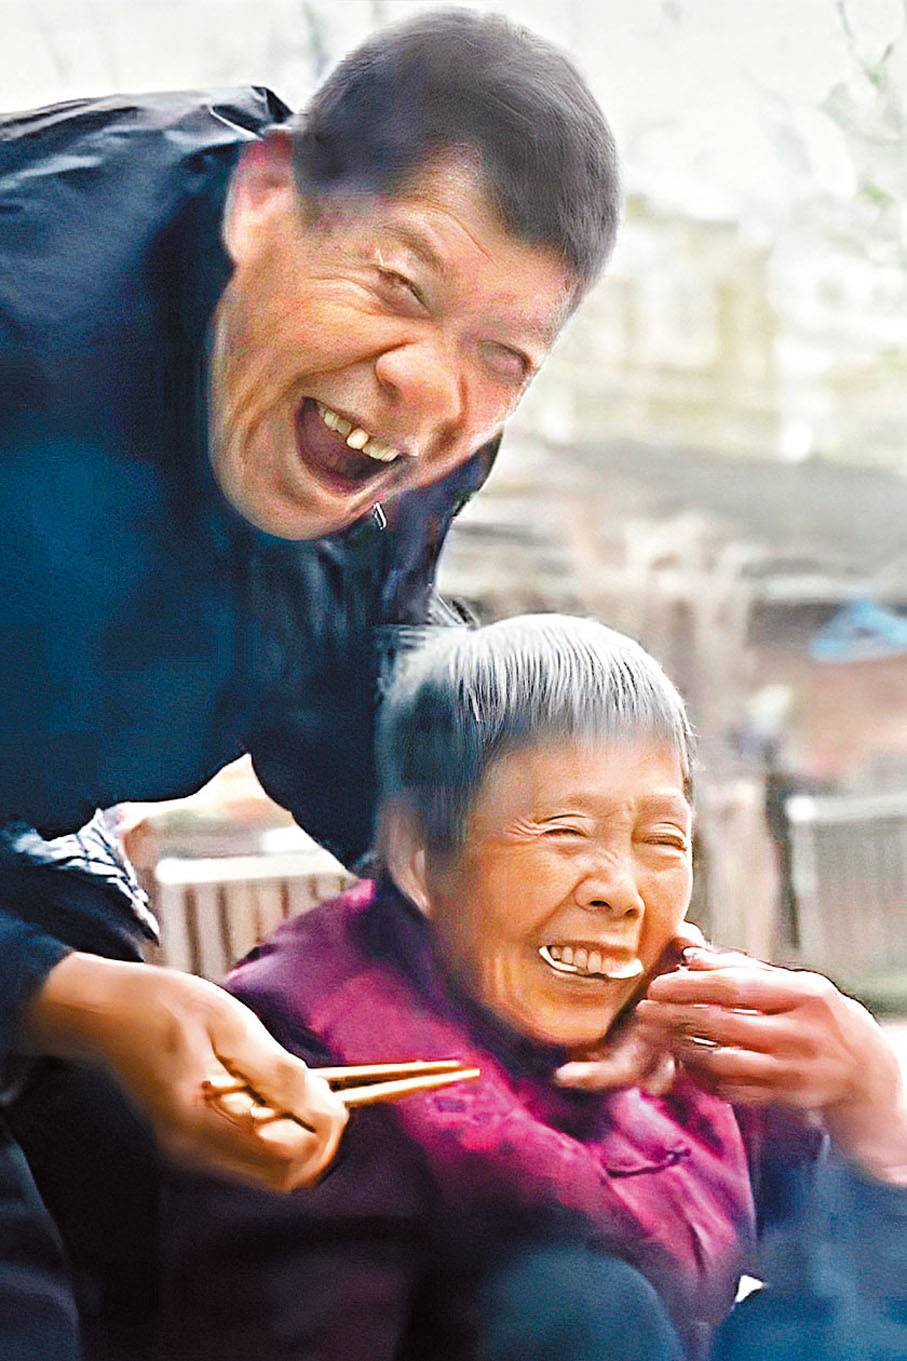 ◆「滅霸爺爺」將餃子塞到「秦巴奶奶」口中，引得奶奶害羞一笑。香港文匯報深圳傳真